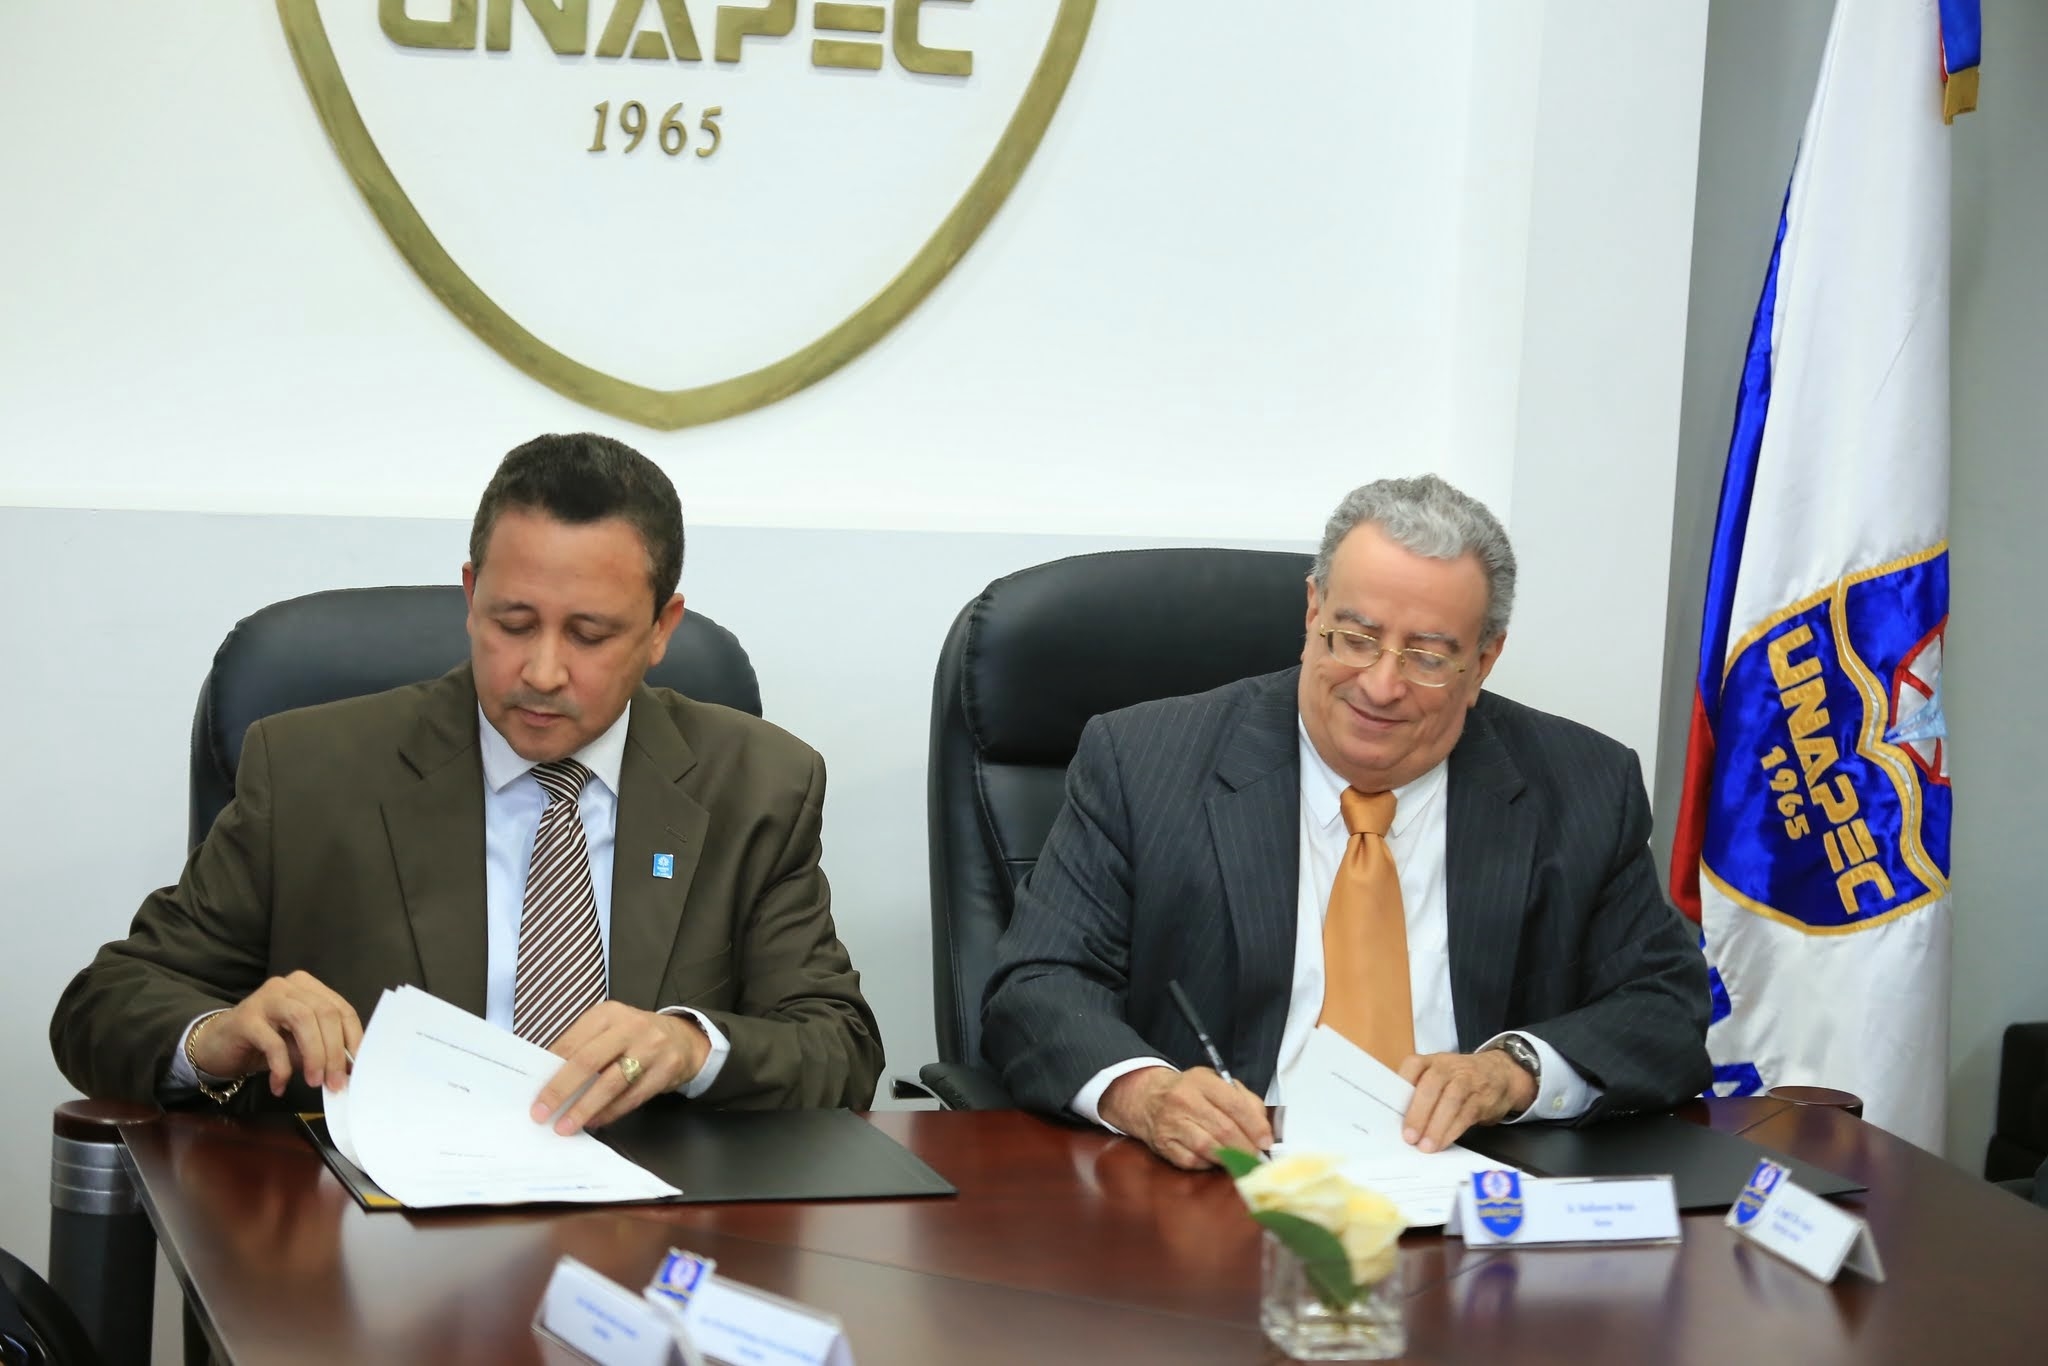 El acuerdo fue firmado este lunes por el doctor Radhamés Mejía Tejeda, rector de UNAPEC, y el licenciado Héctor David Ponciano, director de gestión humana de Grupo Ramos.